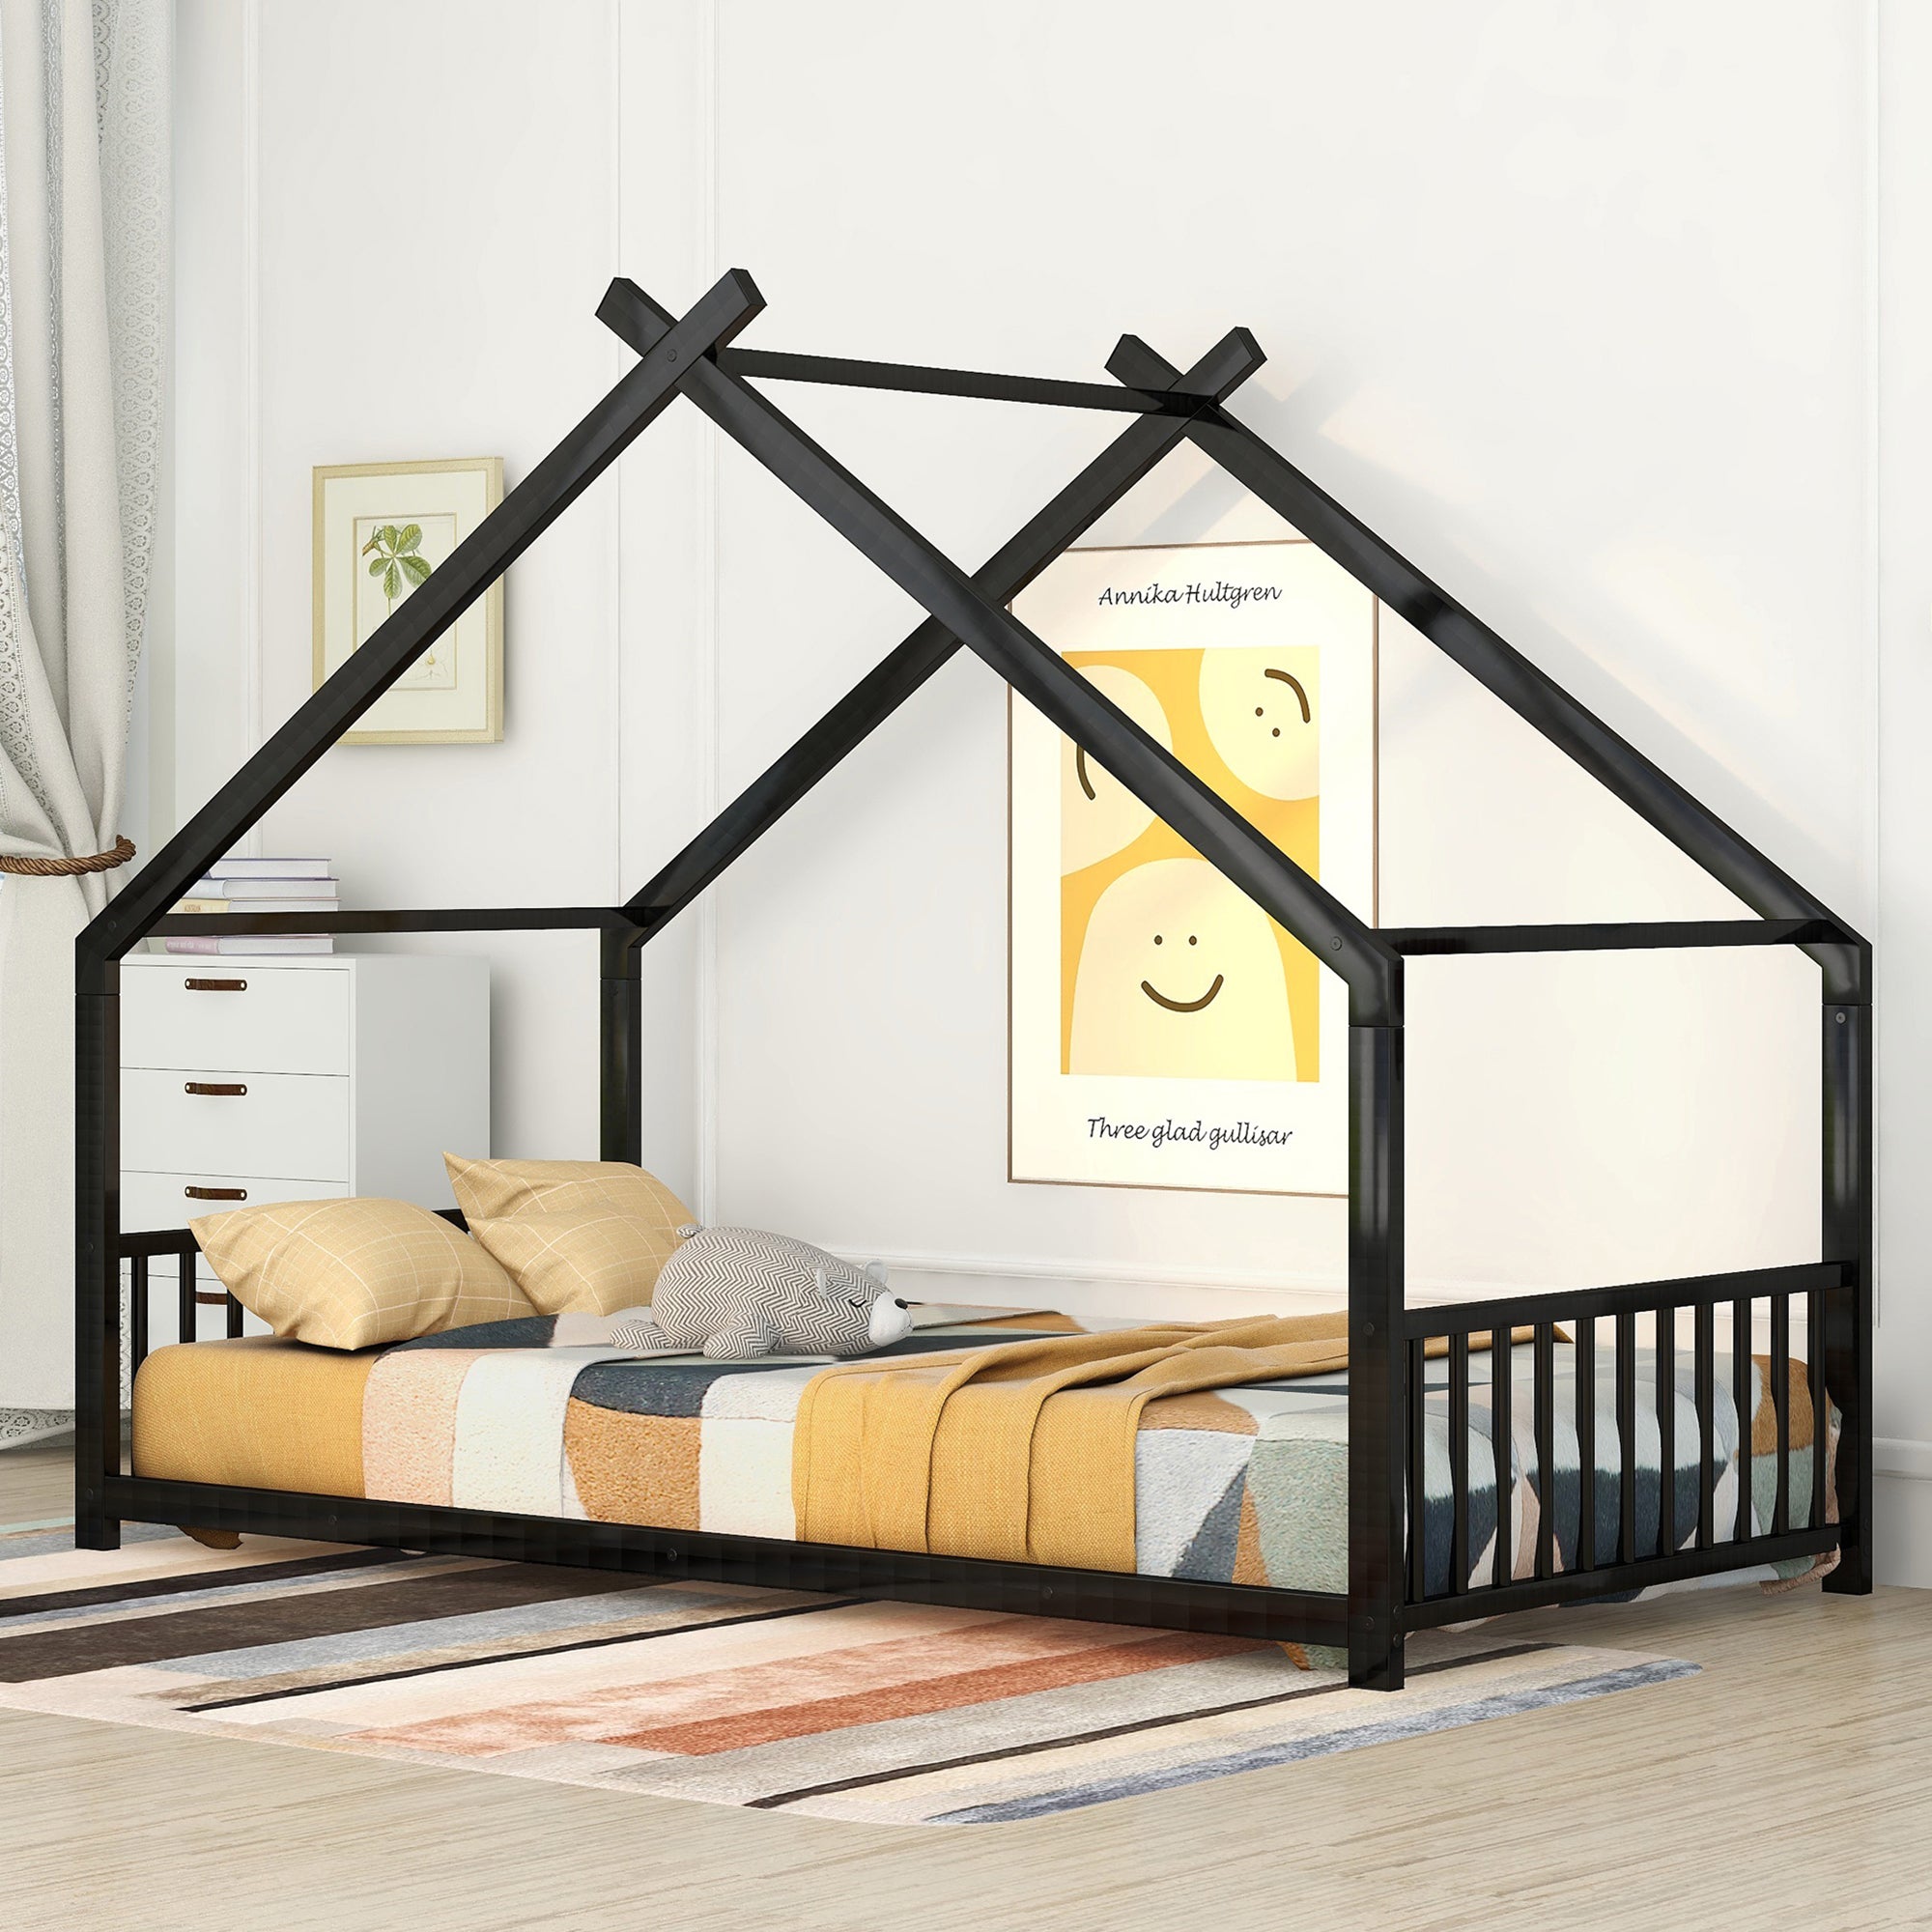 Bellemave Twin Size Metal Montessori House Floor Bed